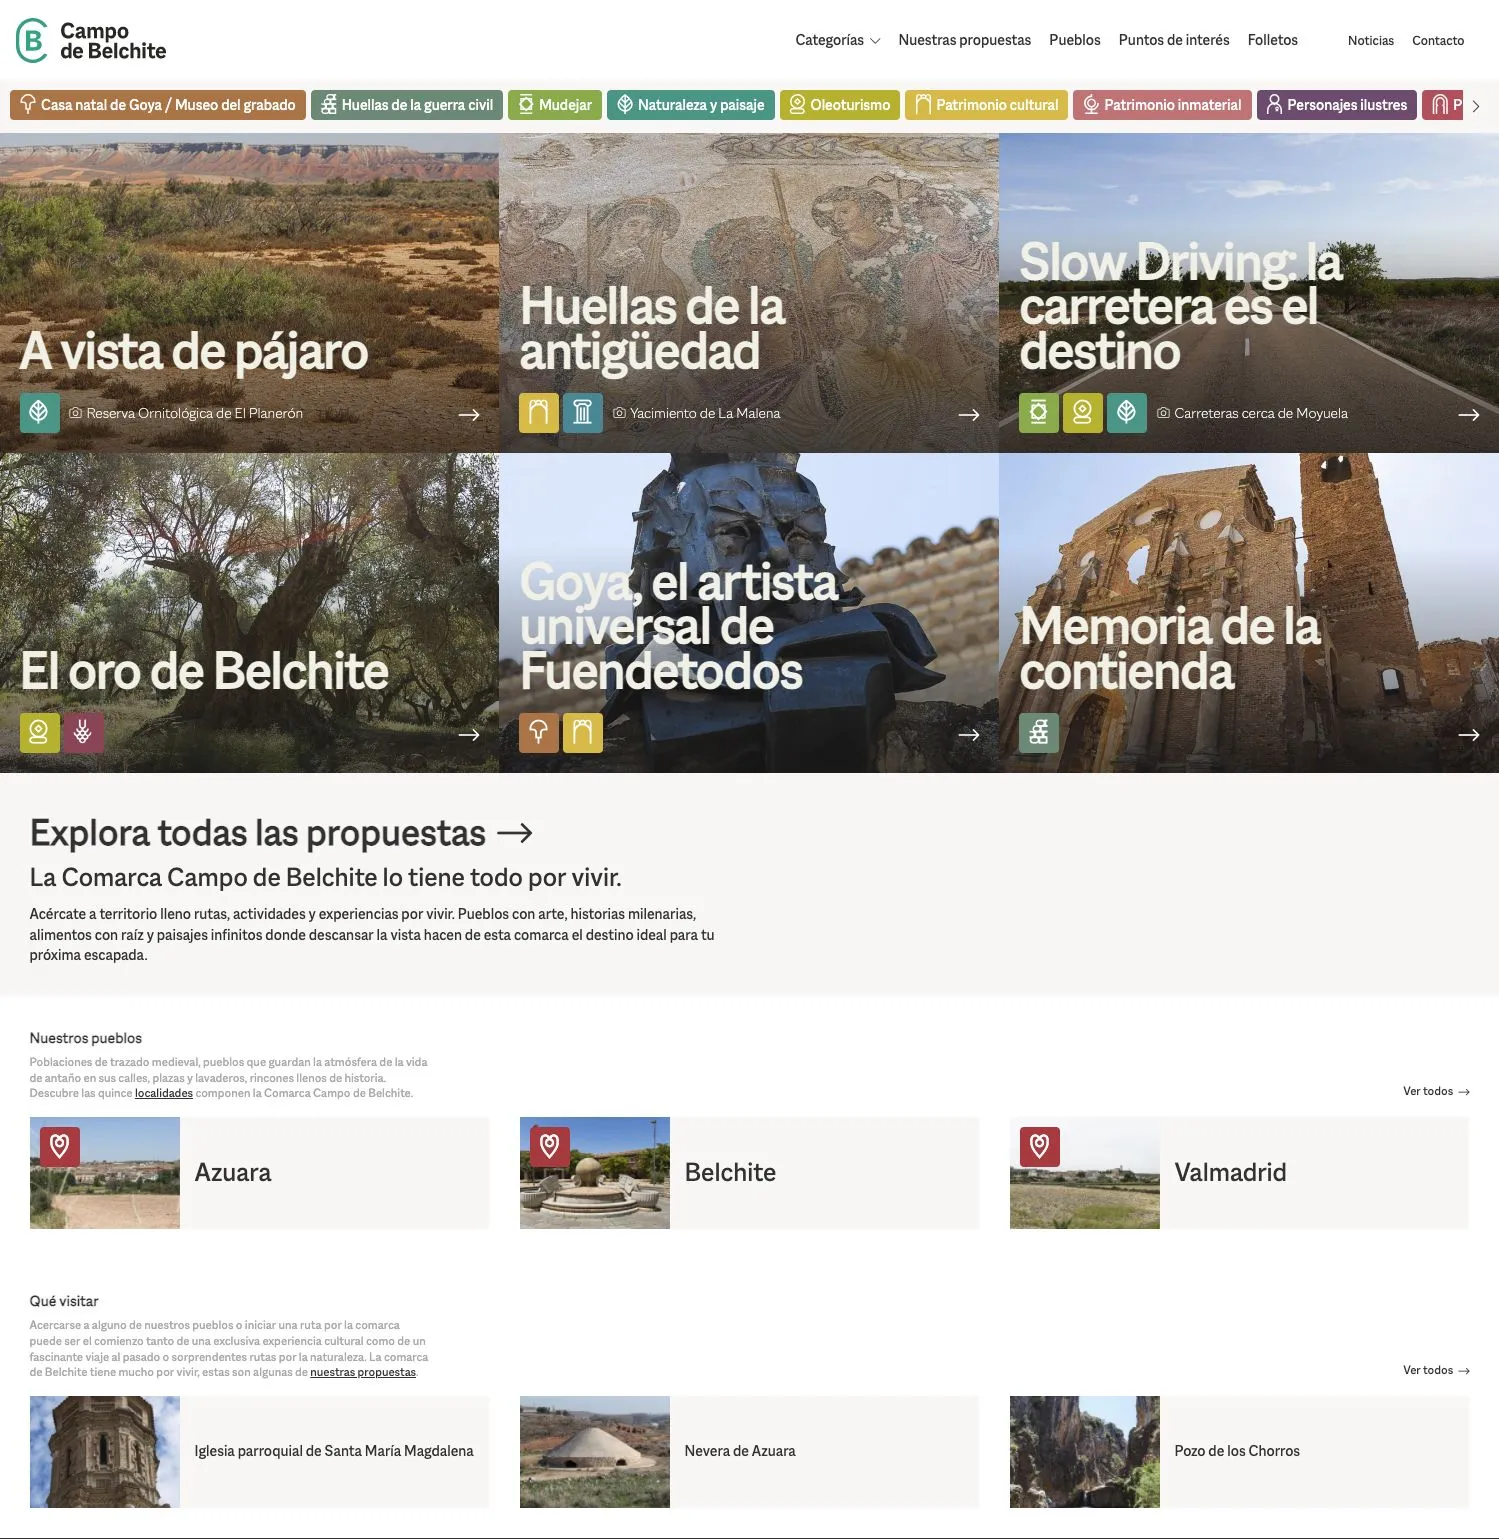 Portal para promocionar el turismo de la Comarca de Belchite.